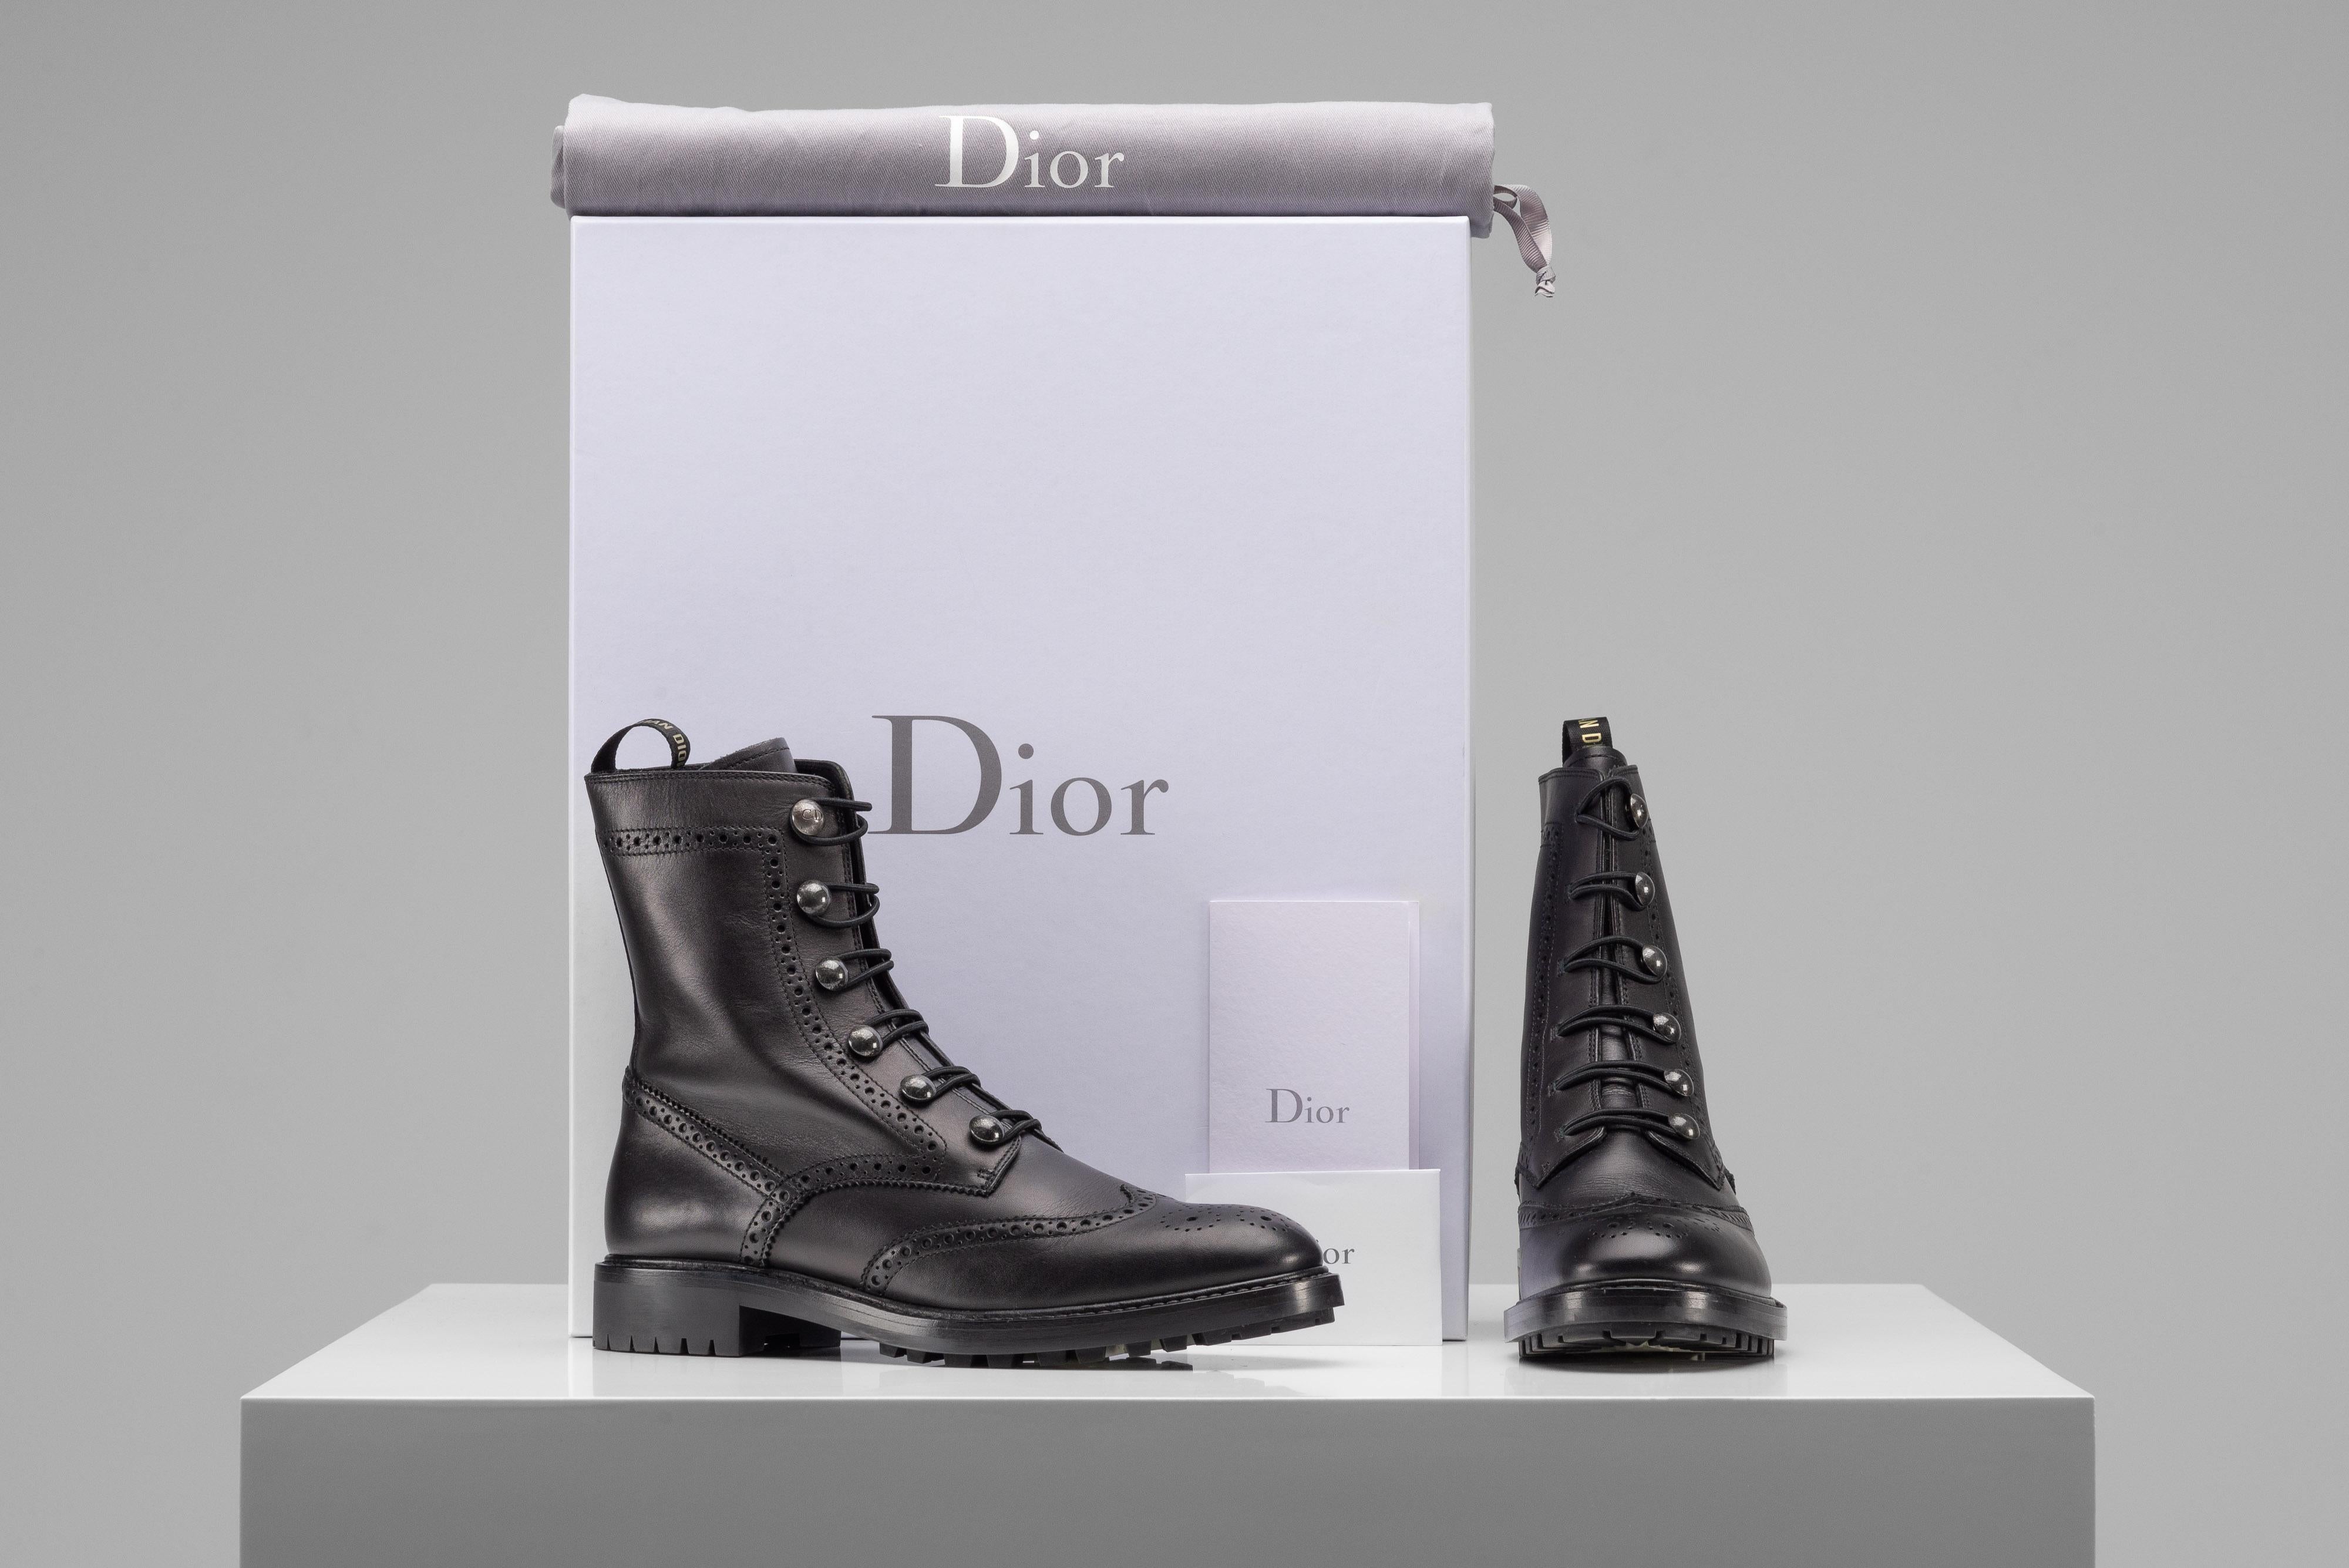 Aus der Kollektion von SAVINETI bieten wir Ihnen diese Dior Combat Boots aus Leder an:
-    Marke: Christian Dior
-    Modell: Leder-Kampfstiefel
-    Farbe: Schwarz
-    Größe: 40
-    Zustand: Sehr guter Zustand
-    Extras: